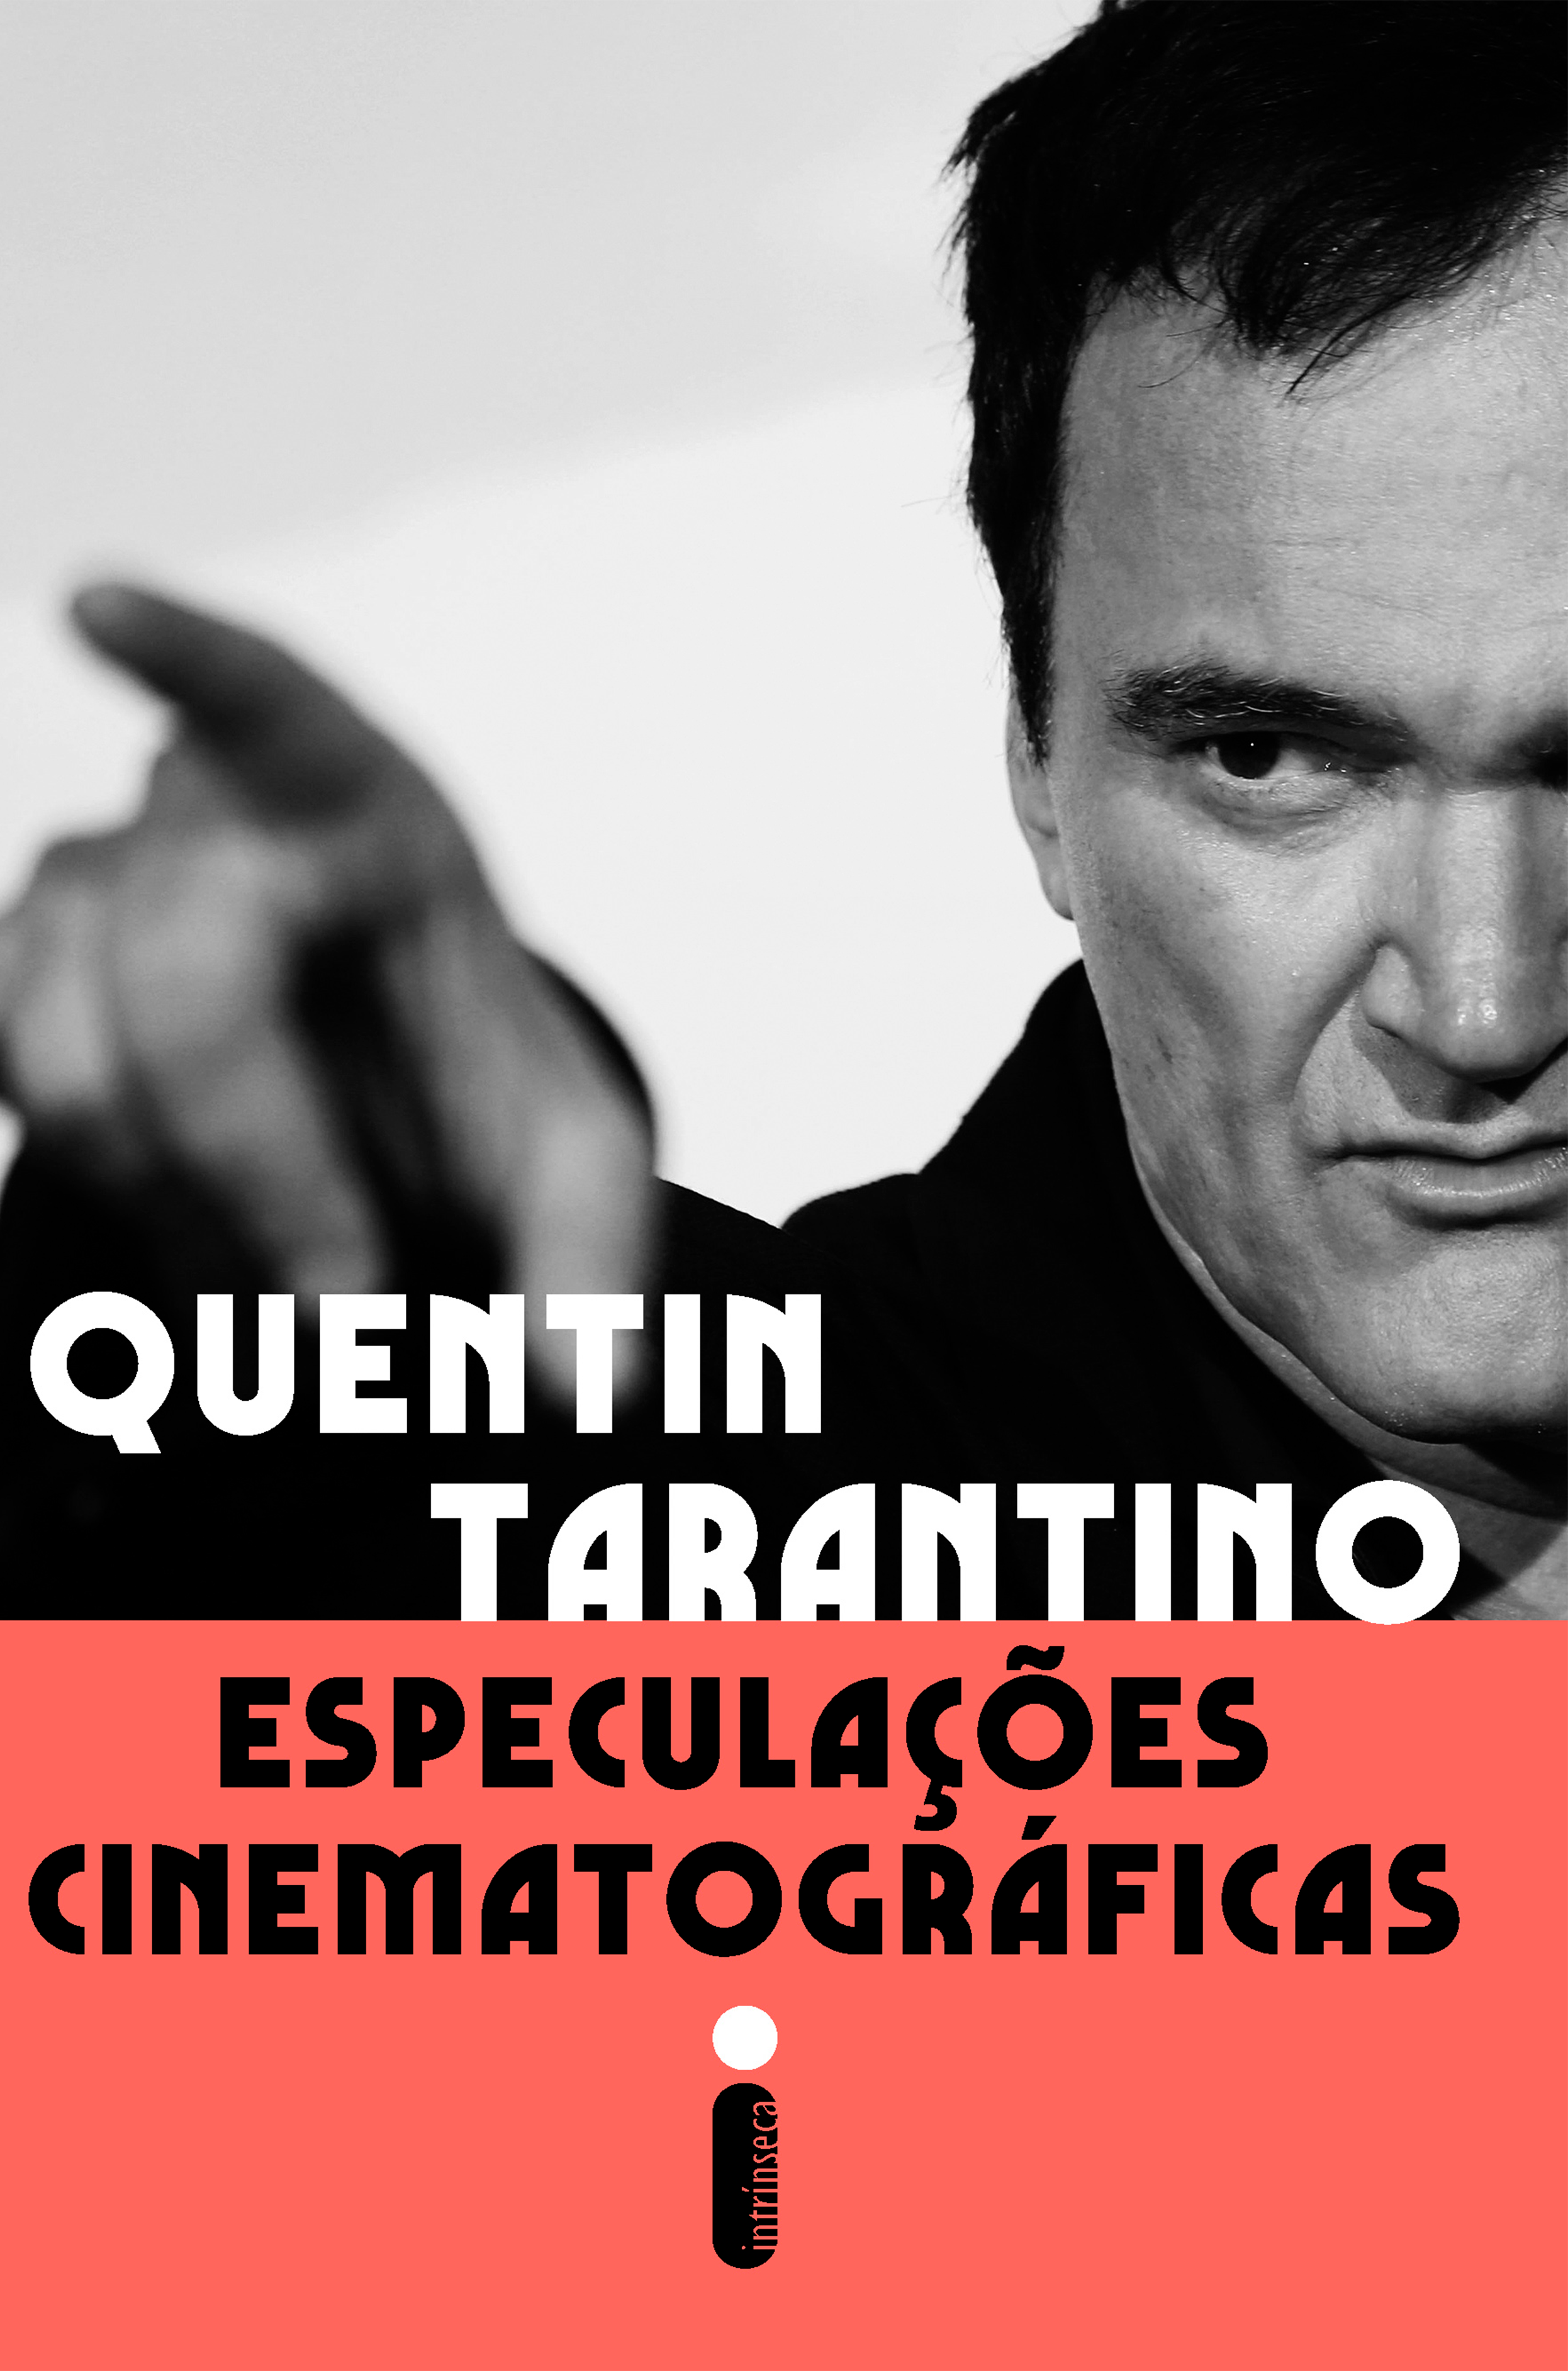 O cinema sob o olhar de Quentin Tarantino | Conheça o livro do aclamado diretor de Pulp Fiction